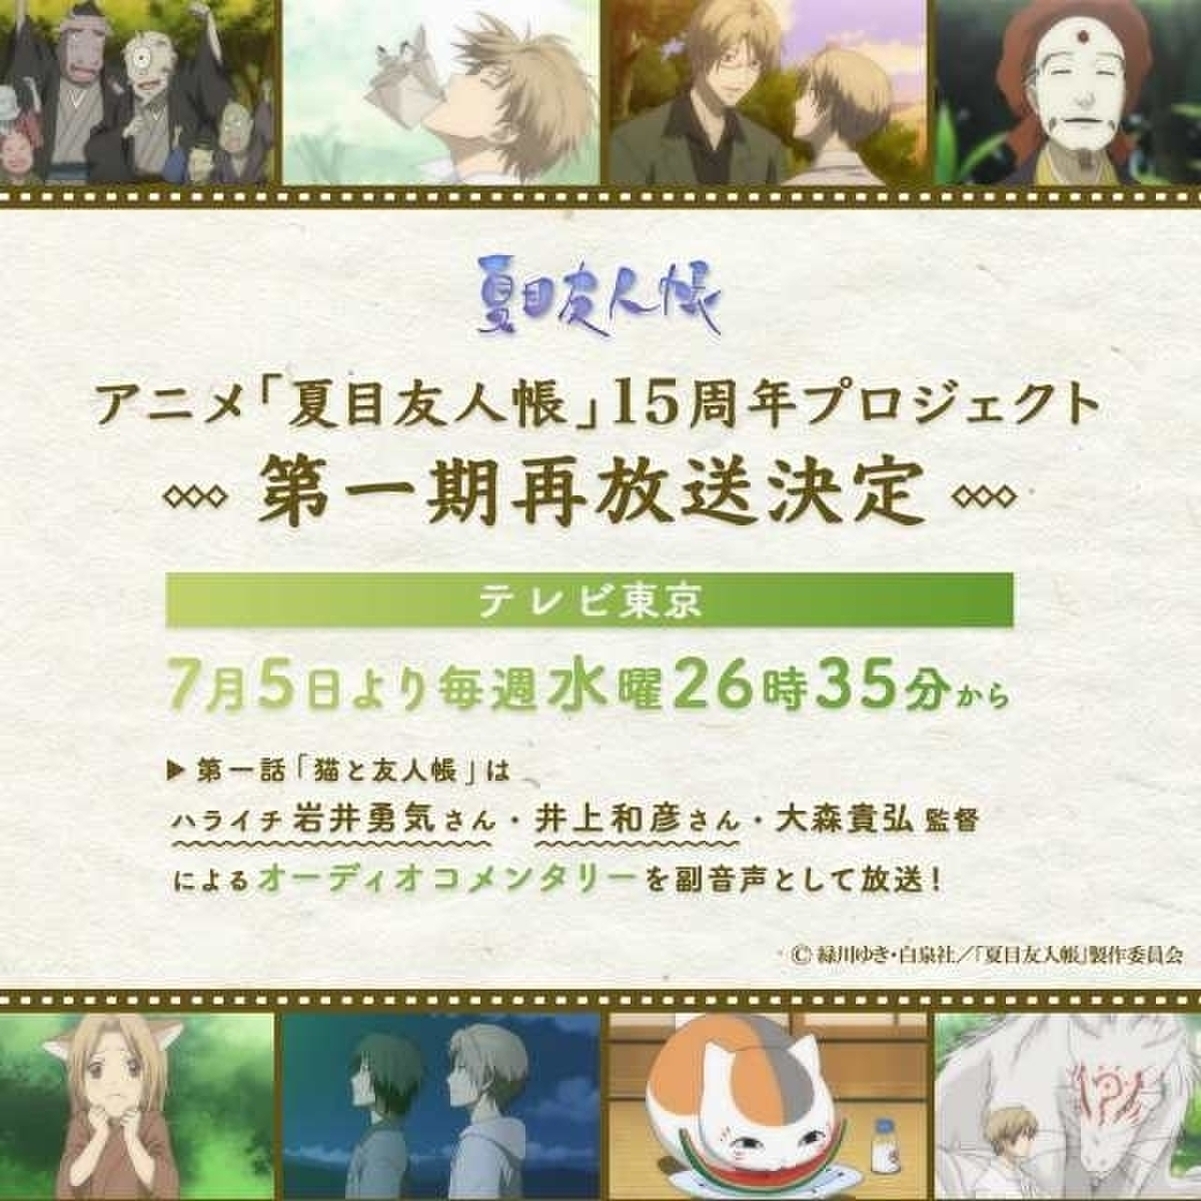 夏目友人帳 BD BOX(第一期・第二期)いつか雪のひにセット - アニメ